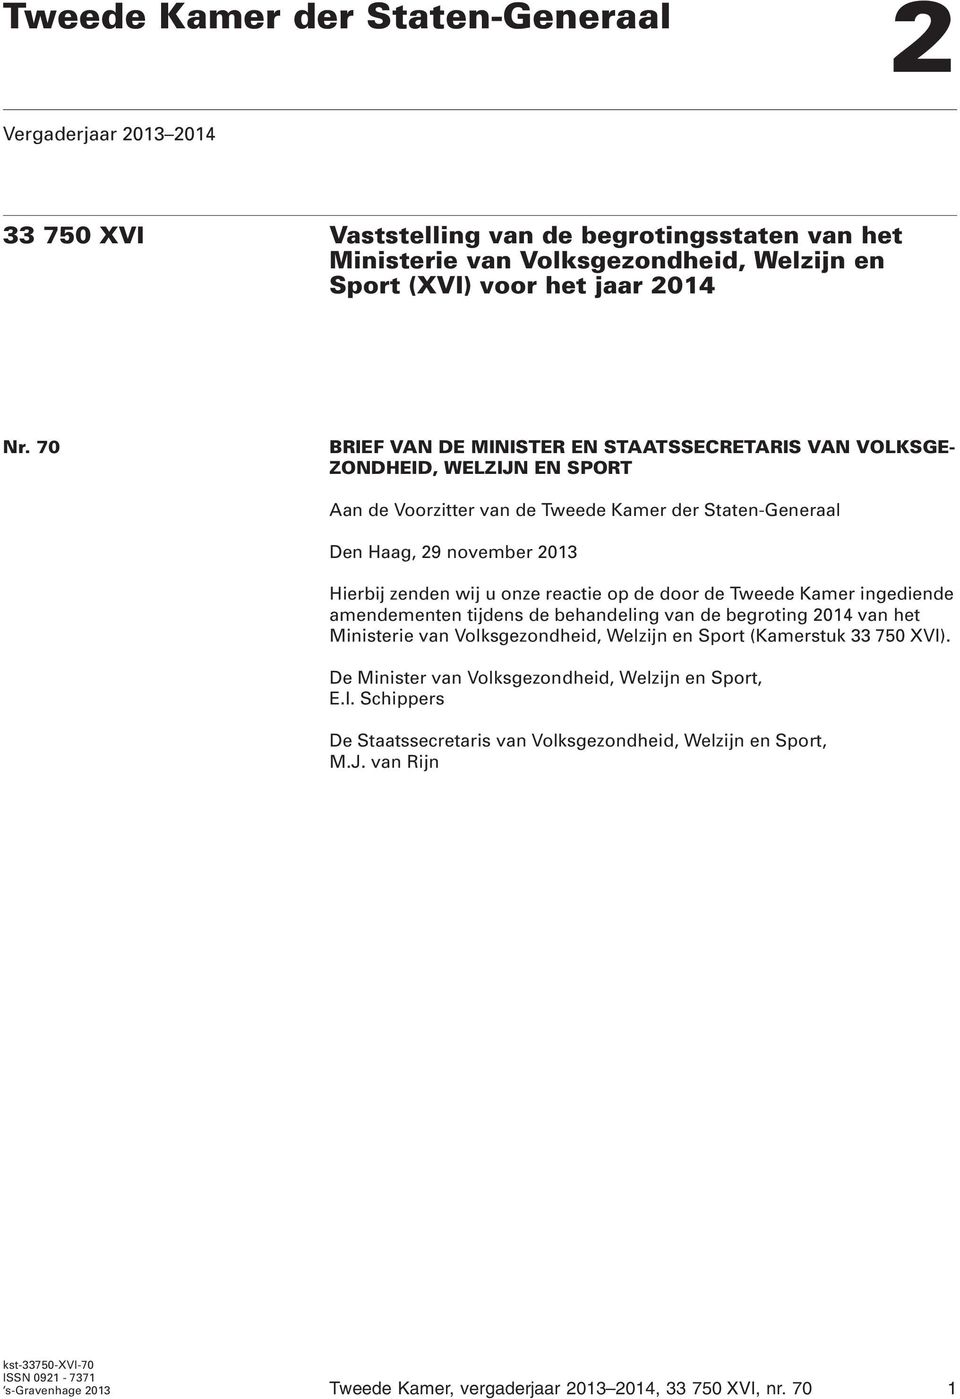 reactie op de door de Tweede Kamer ingediende amendementen tijdens de behandeling van de begroting 2014 van het Ministerie van Volksgezondheid, Welzijn en Sport (Kamerstuk 33 750 XVI).